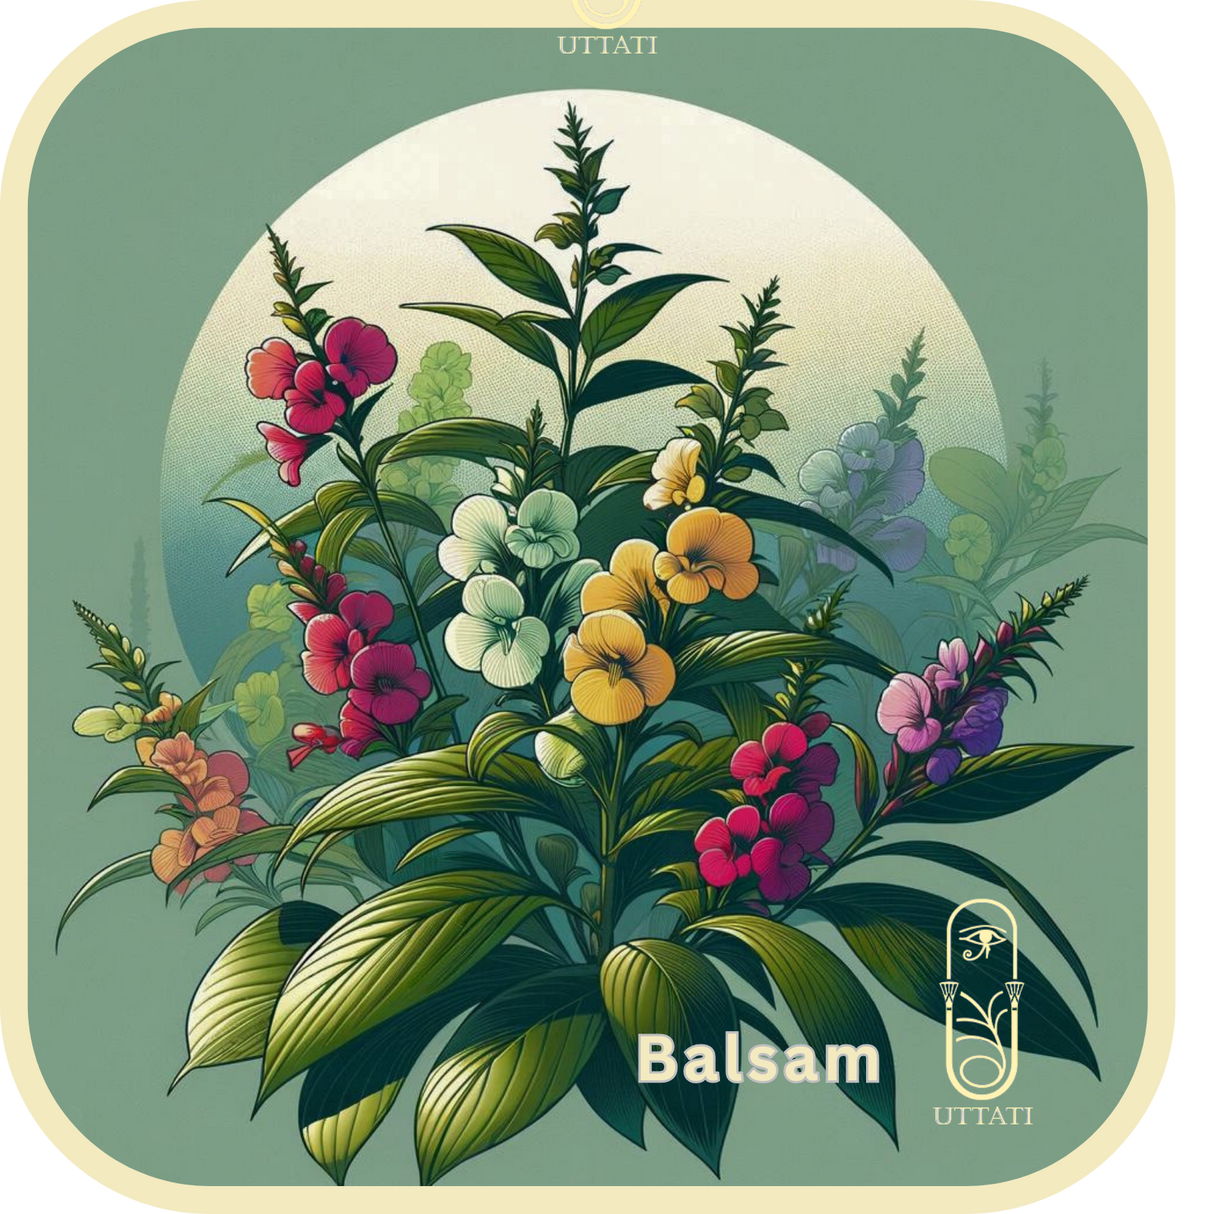 Balsam (Peru)